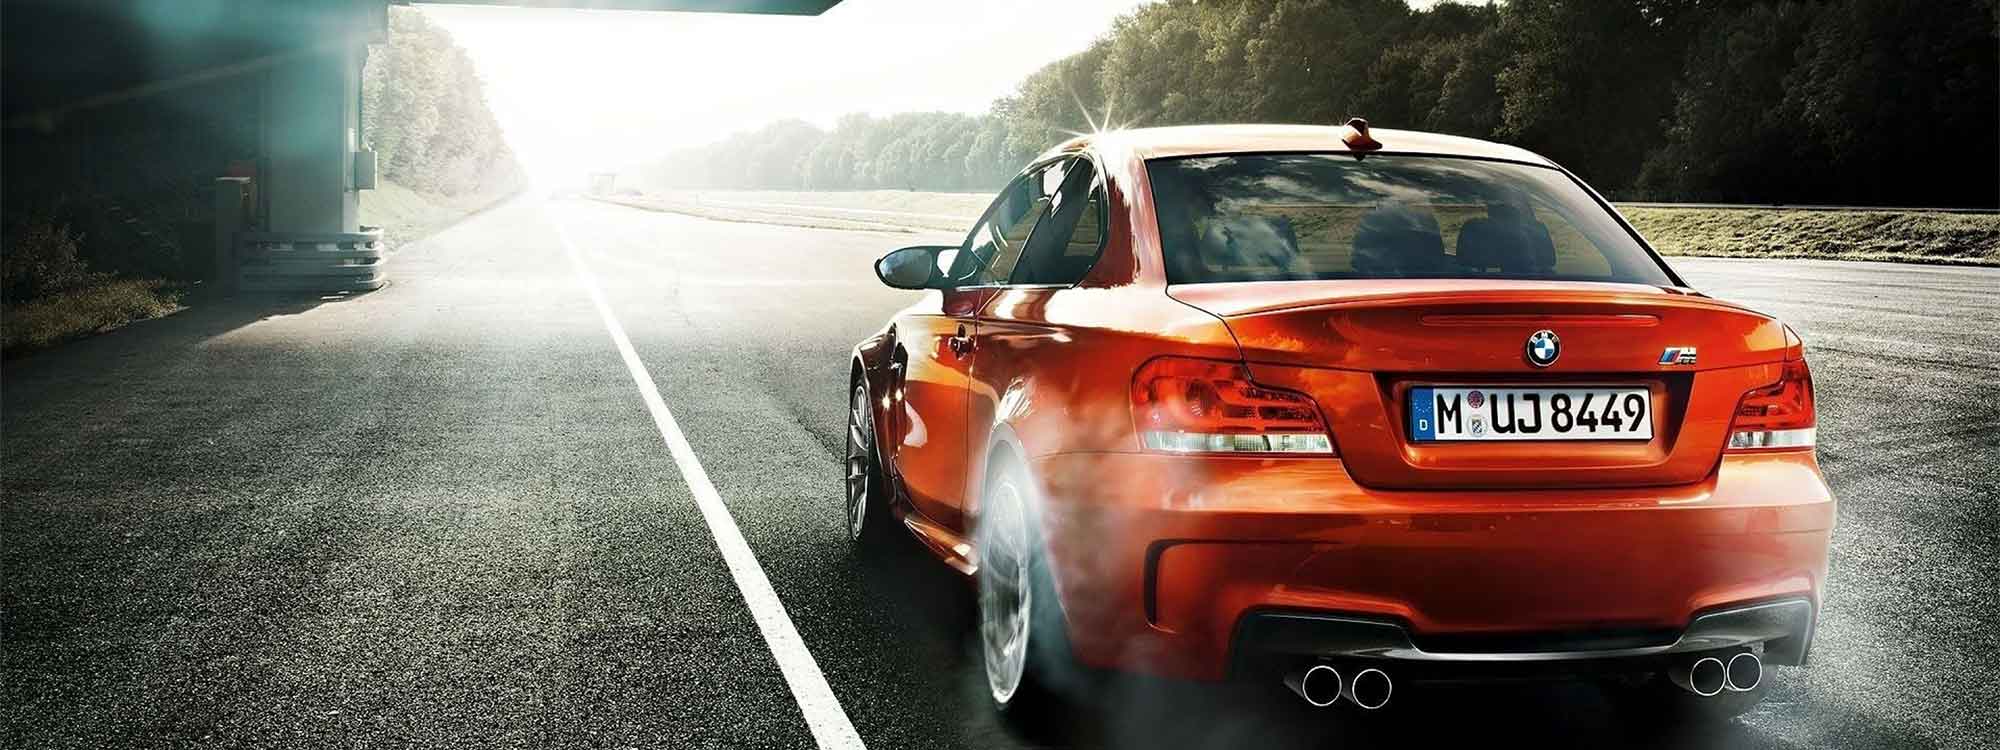 Rode auto-BMW--www.roetfilter-verwijderen.com-roetfilter terugplaatsen-